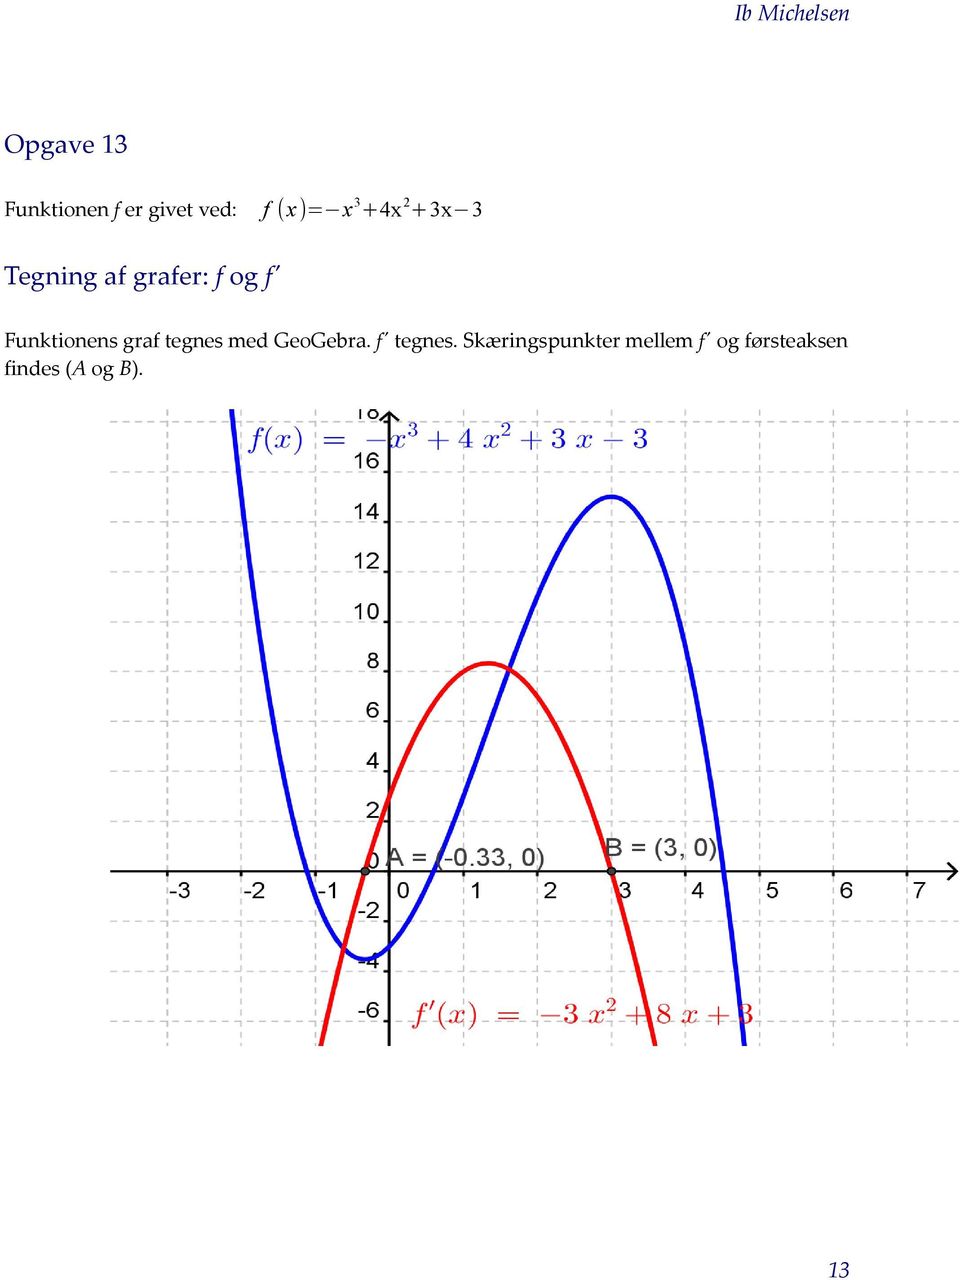 Funktionens graf tegnes med GeoGebra. f' tegnes.